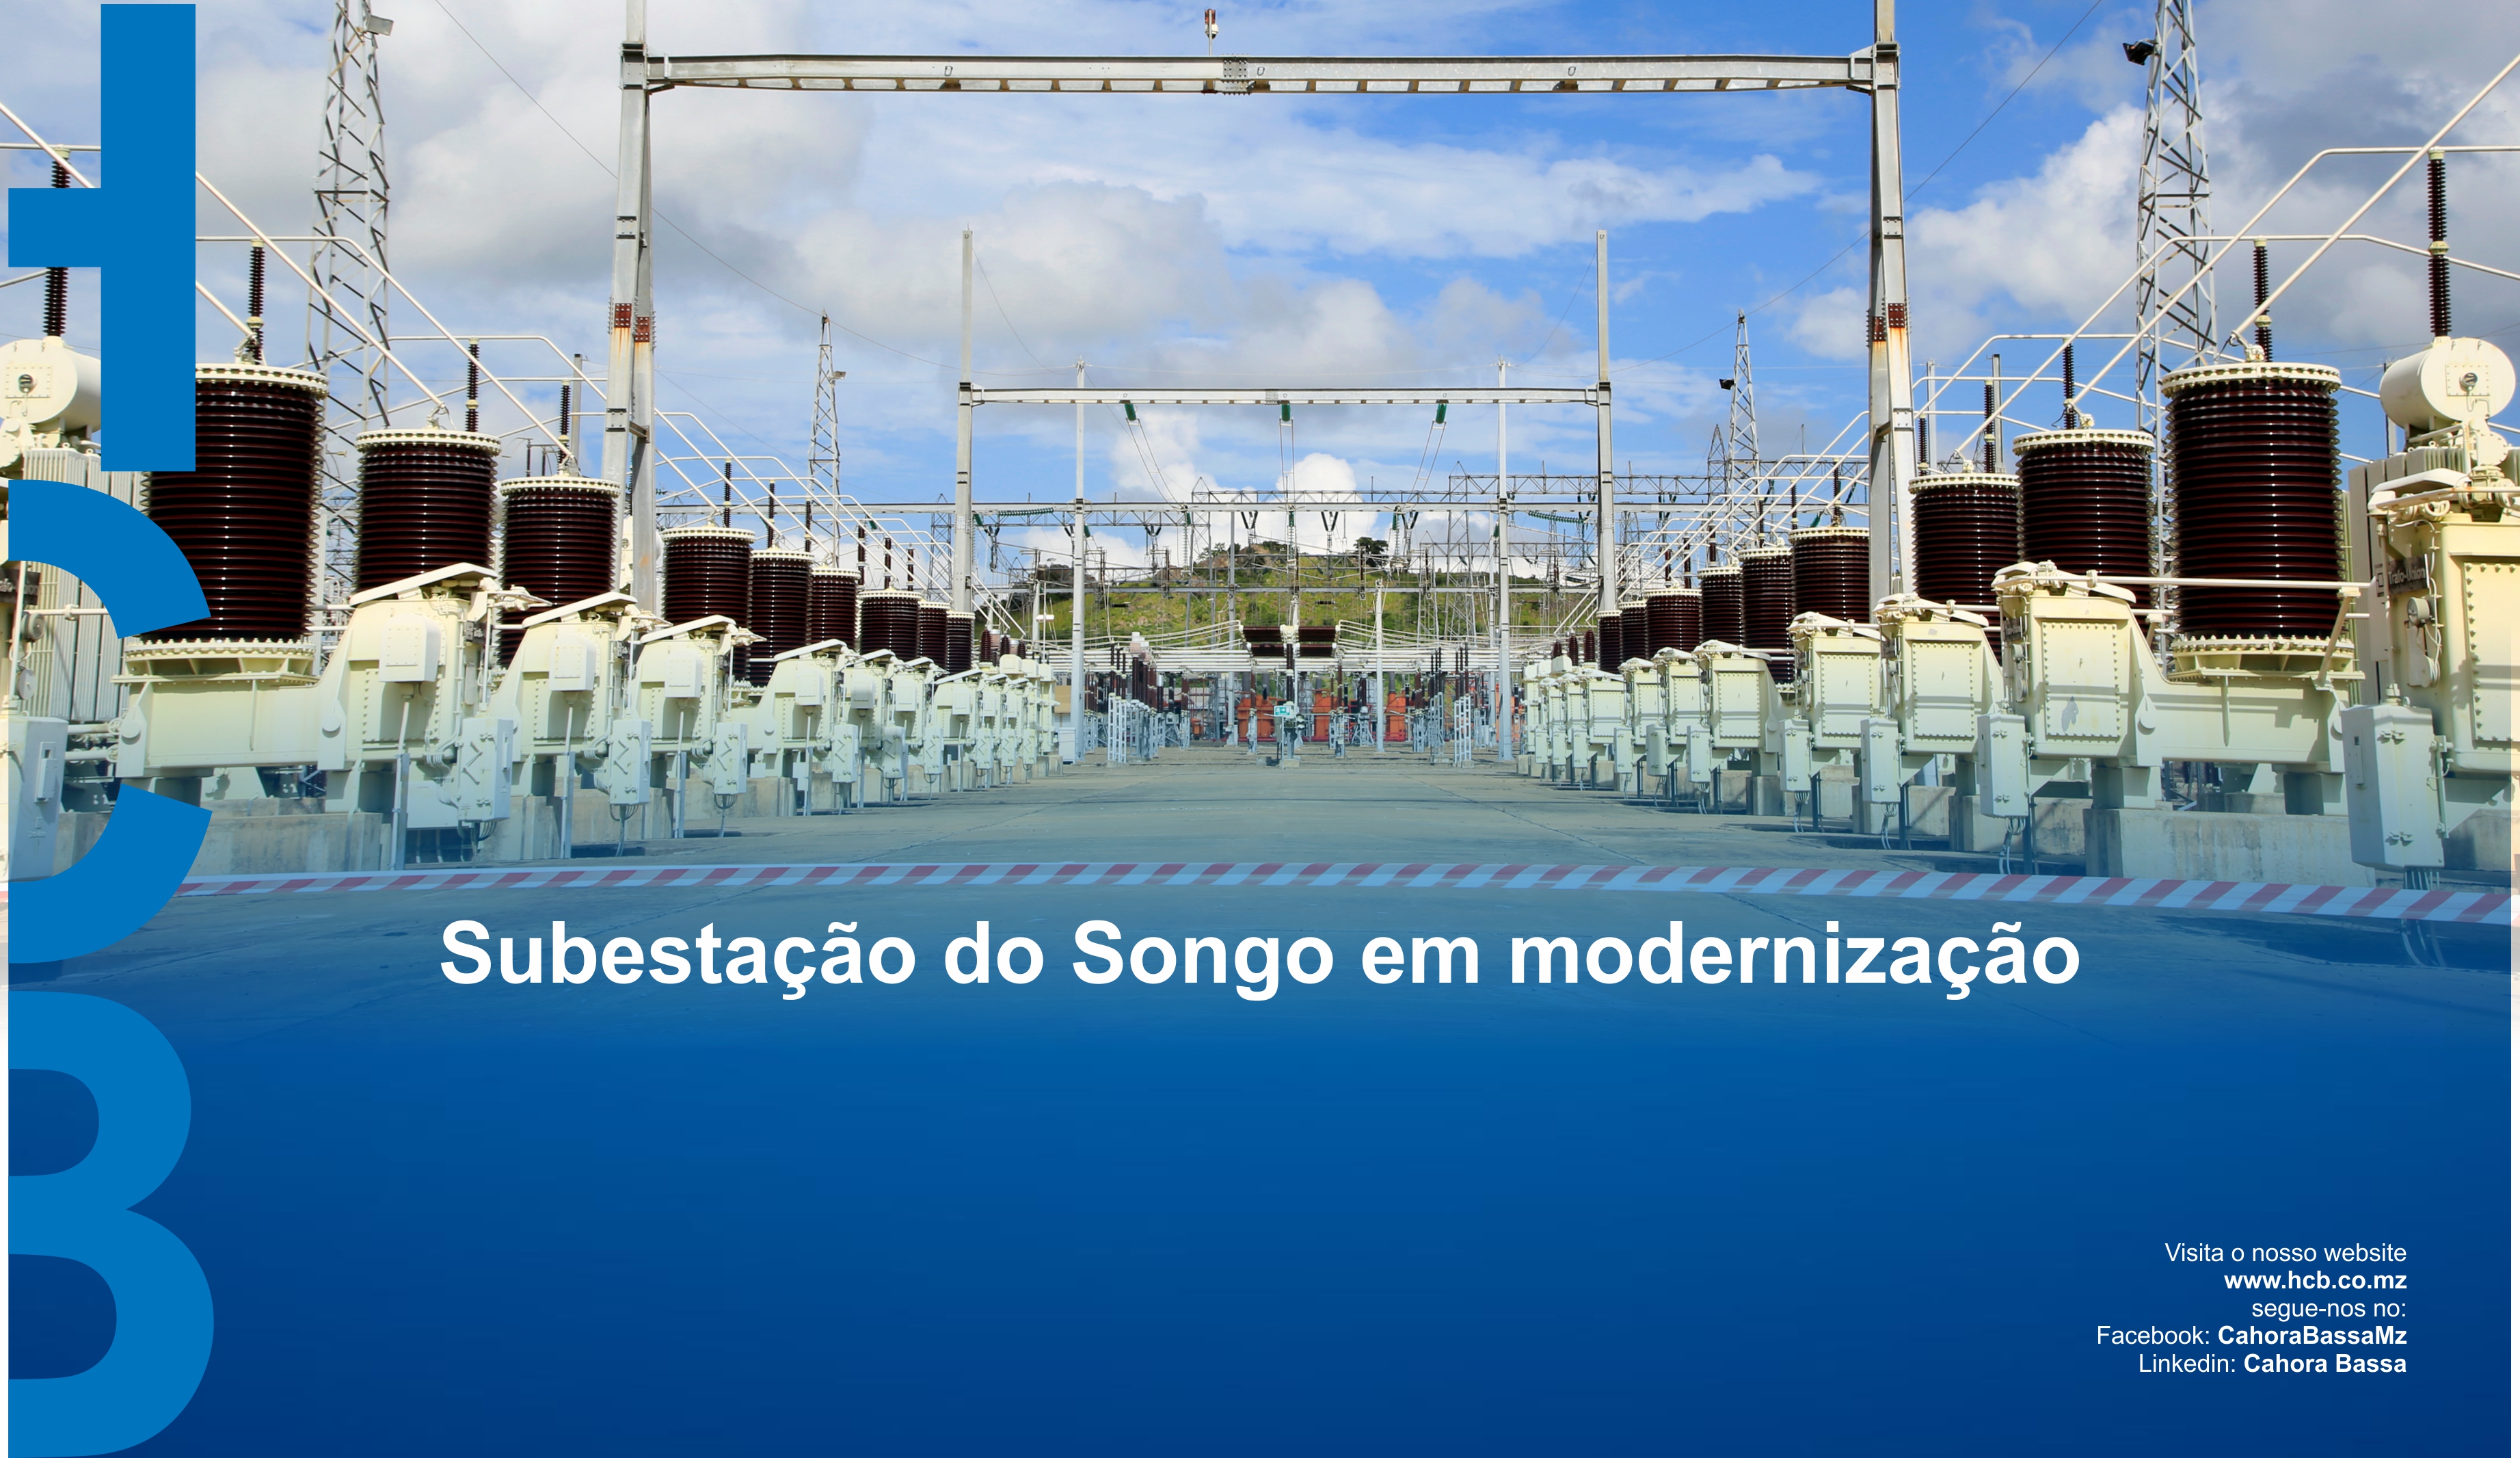 Subestação do Songo em modernização, intranet, 03 de Marco de 2021